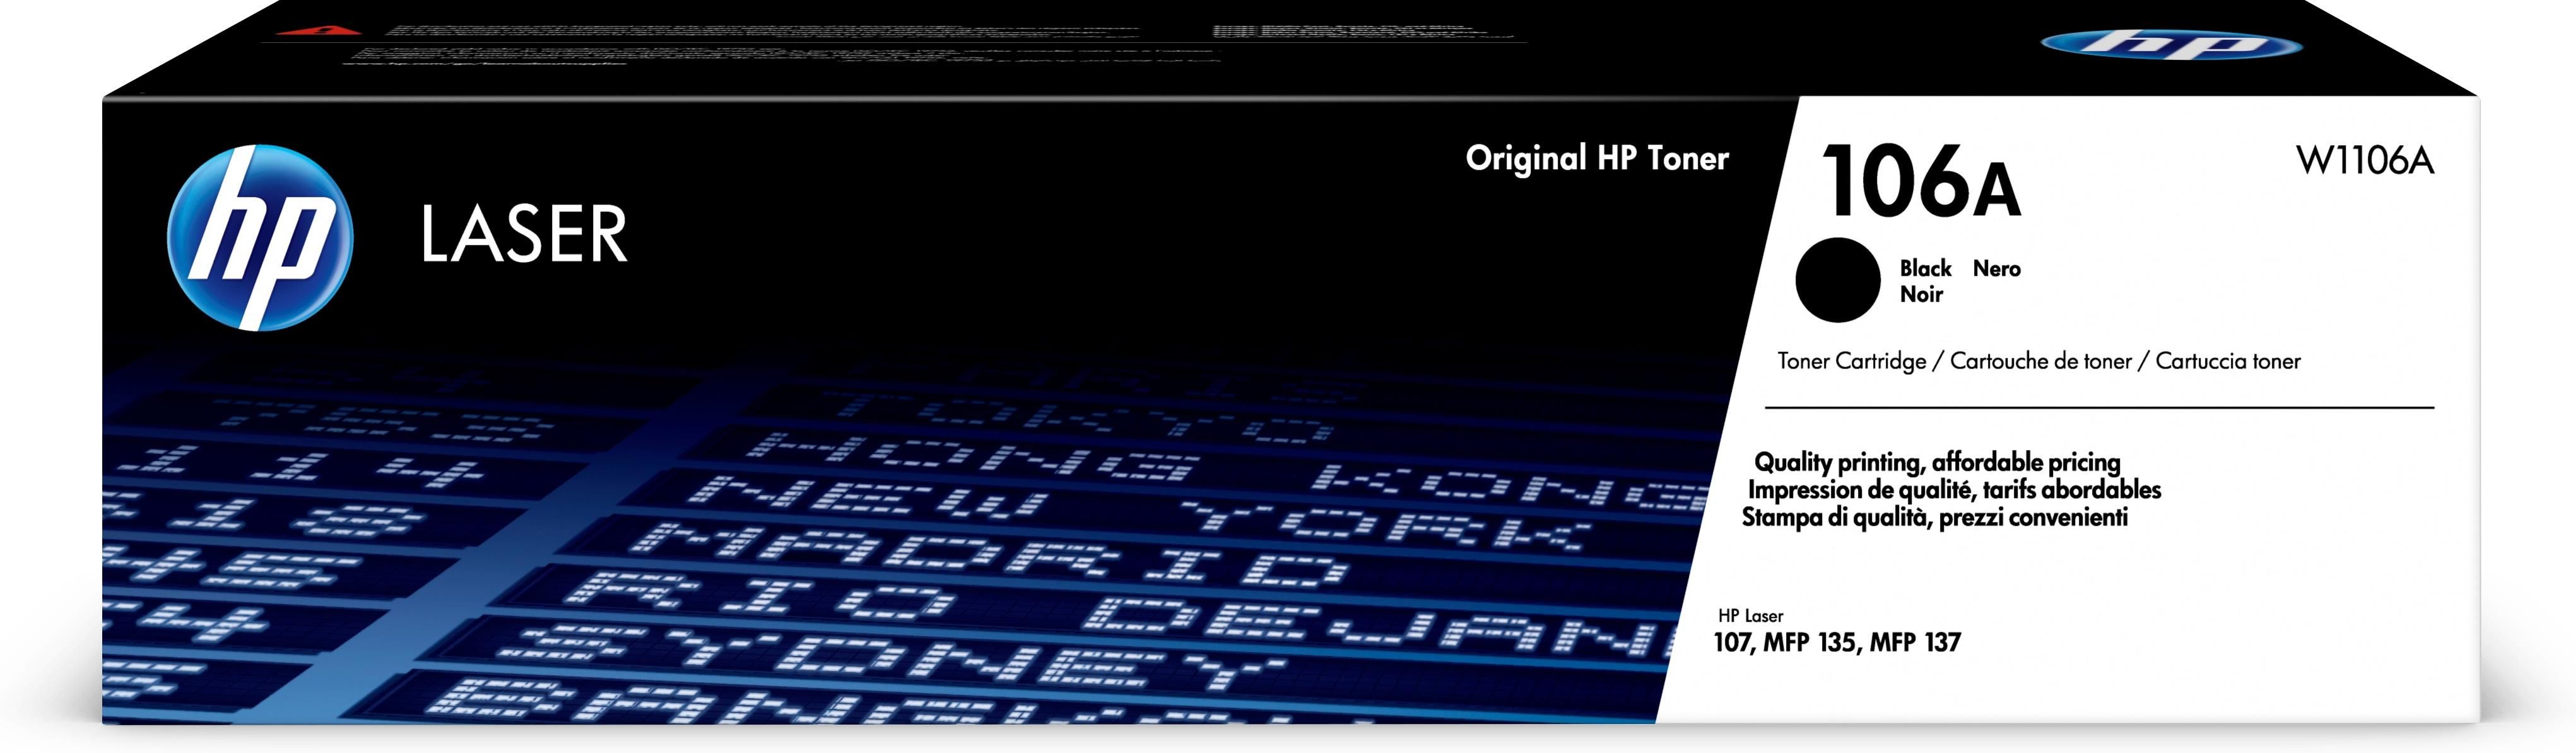 HP 106A Toner Originale